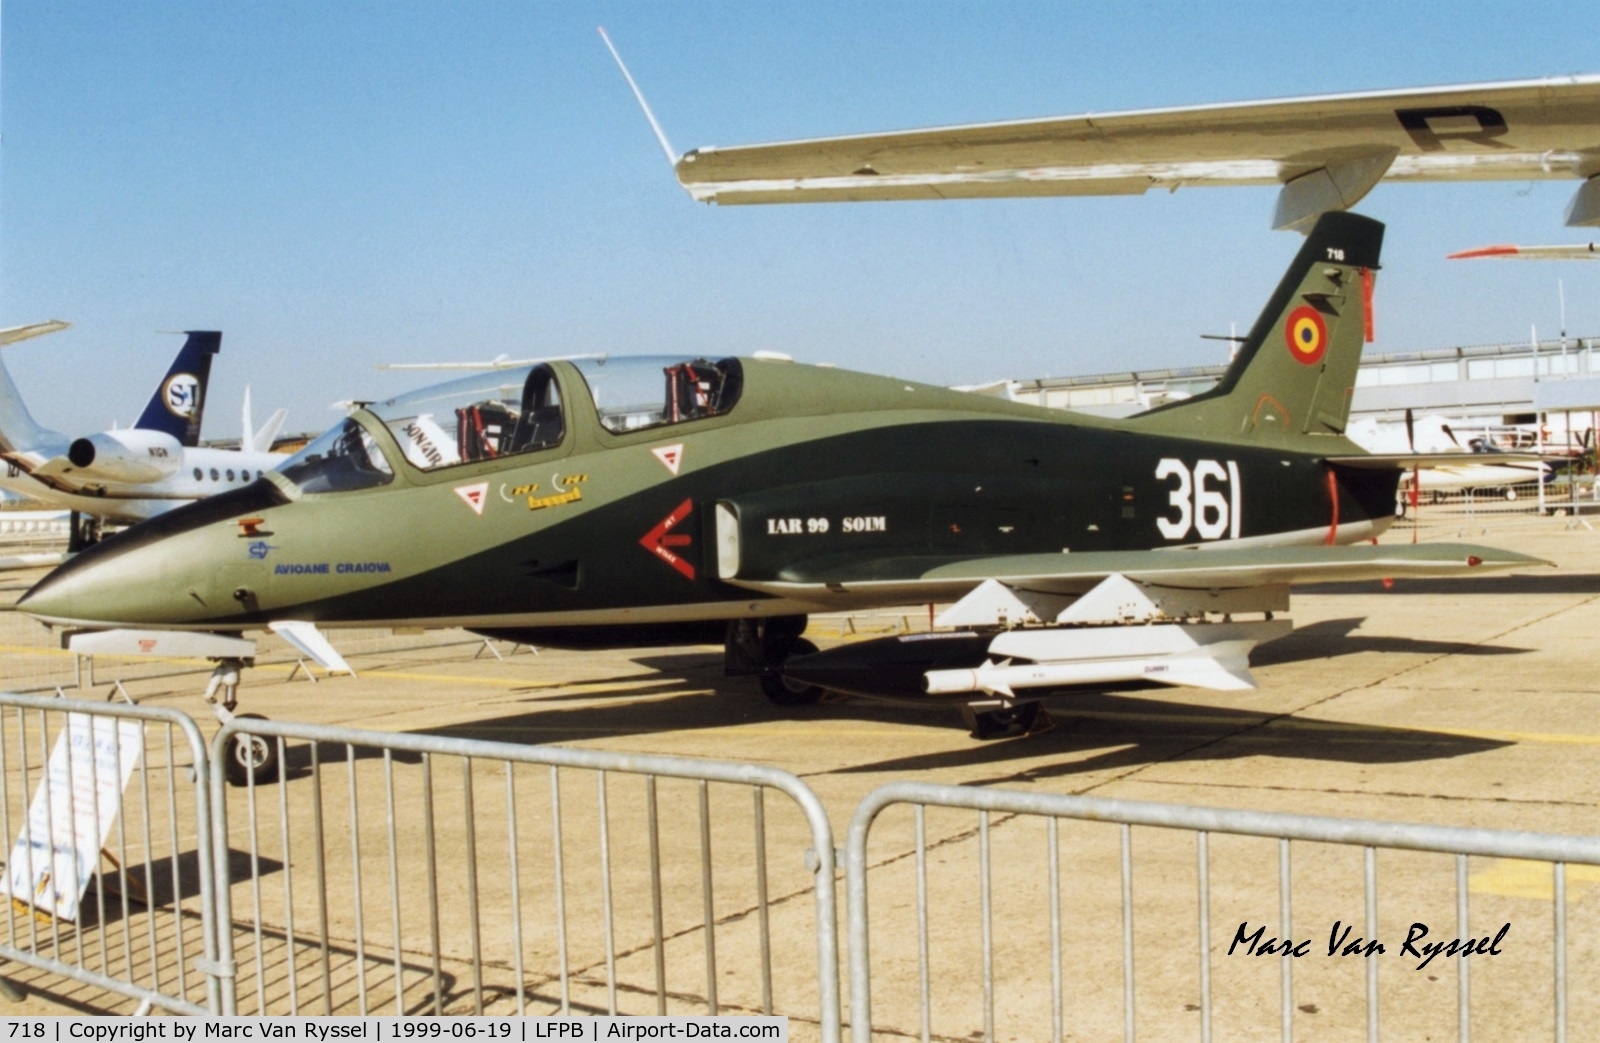 718, 1997 IAR IAR-99 Soim C/N 18, At Paris Air Show 1999.